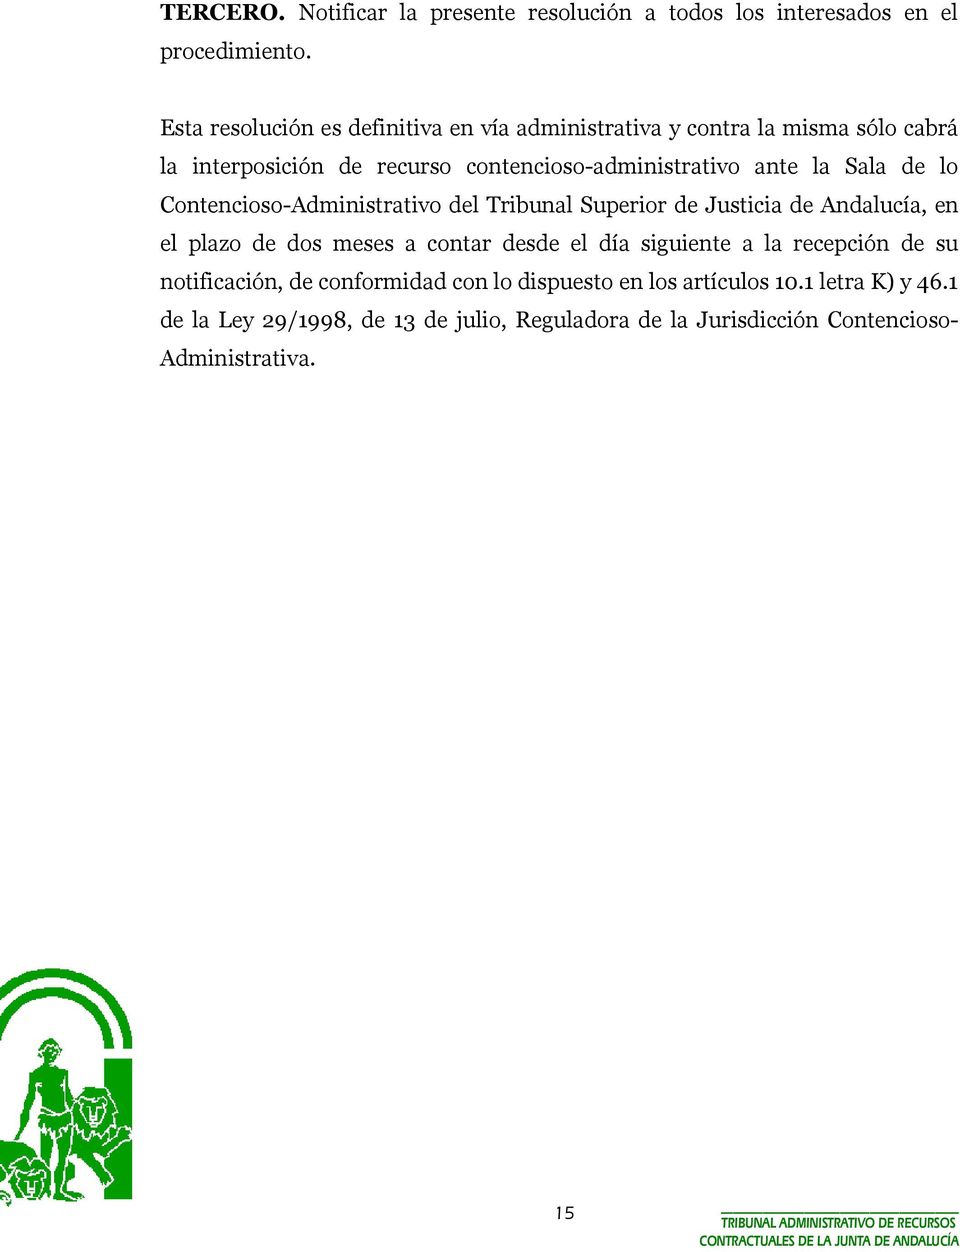 Sala de lo Contencioso-Administrativo del Tribunal Superior de Justicia de Andalucía, en el plazo de dos meses a contar desde el día siguiente